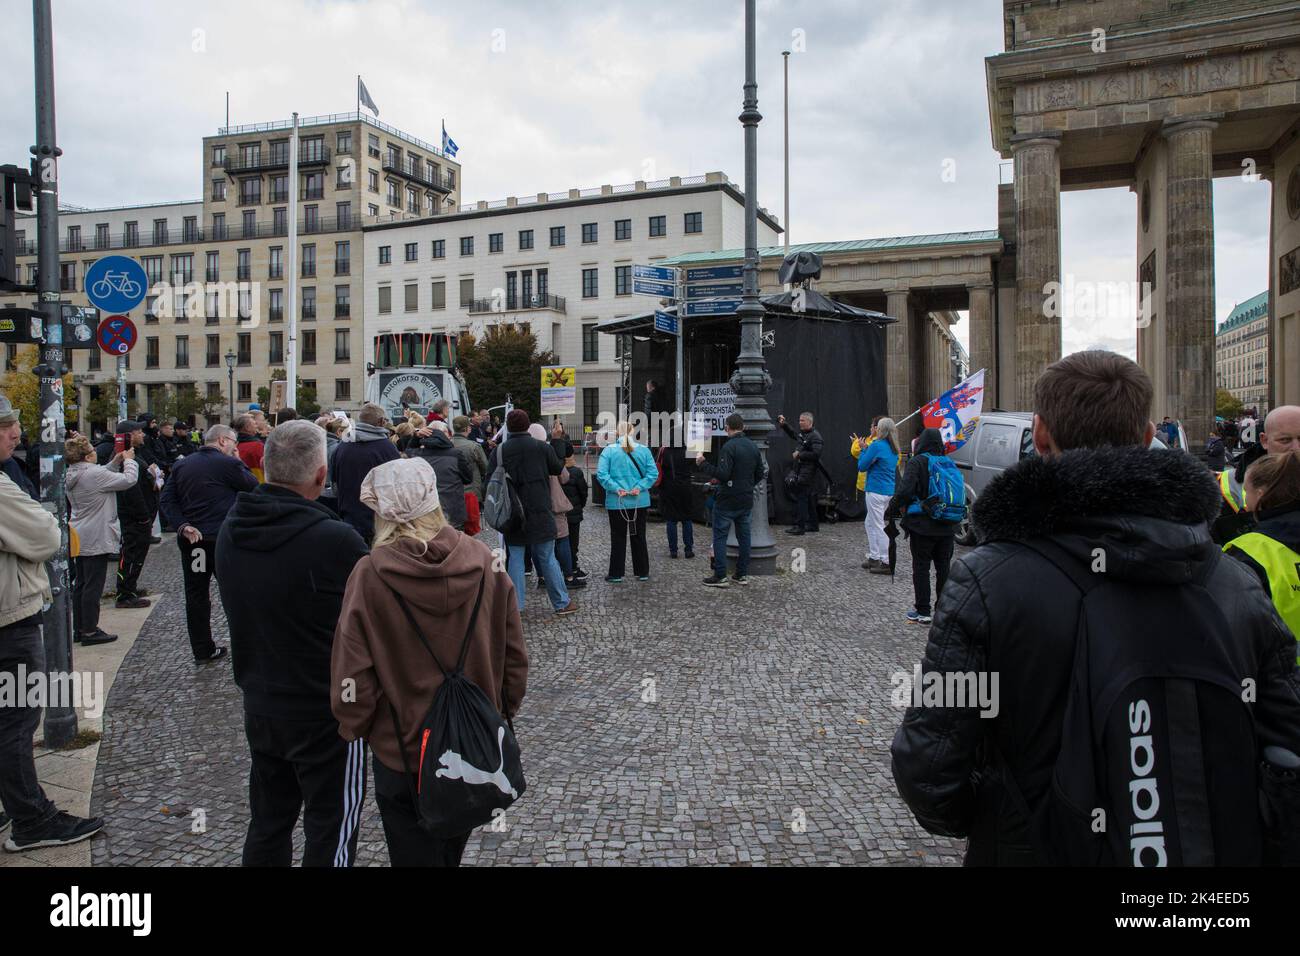 Berlin, Deutschland. 2. Oktober 2022. Am 2. Oktober 2022 versammelten sich Demonstranten bei einer Kundgebung vor dem Brandenburger Tor in Berlin. Die Polizei sperrte das Gebiet ab und war mit einer sehr hohen Anzahl von Polizeikräften anwesend. Bei der Kundgebung ging es vor allem um die Ausgrenzung und Diskriminierung von Menschen russischer Herkunft in Deutschland. Zu Beginn der Kundgebung wurde die russische Nationalhymne gespielt und Demonstranten winkten russische Fahnen und hielten Schilder hoch. Die Teilnehmer machten deutlich, dass sie gegen die NATO und auch gegen Waffenlieferungen an die Ukraine sind. Während einer lauten Rede klärte ein Protestler und schrie Stockfoto